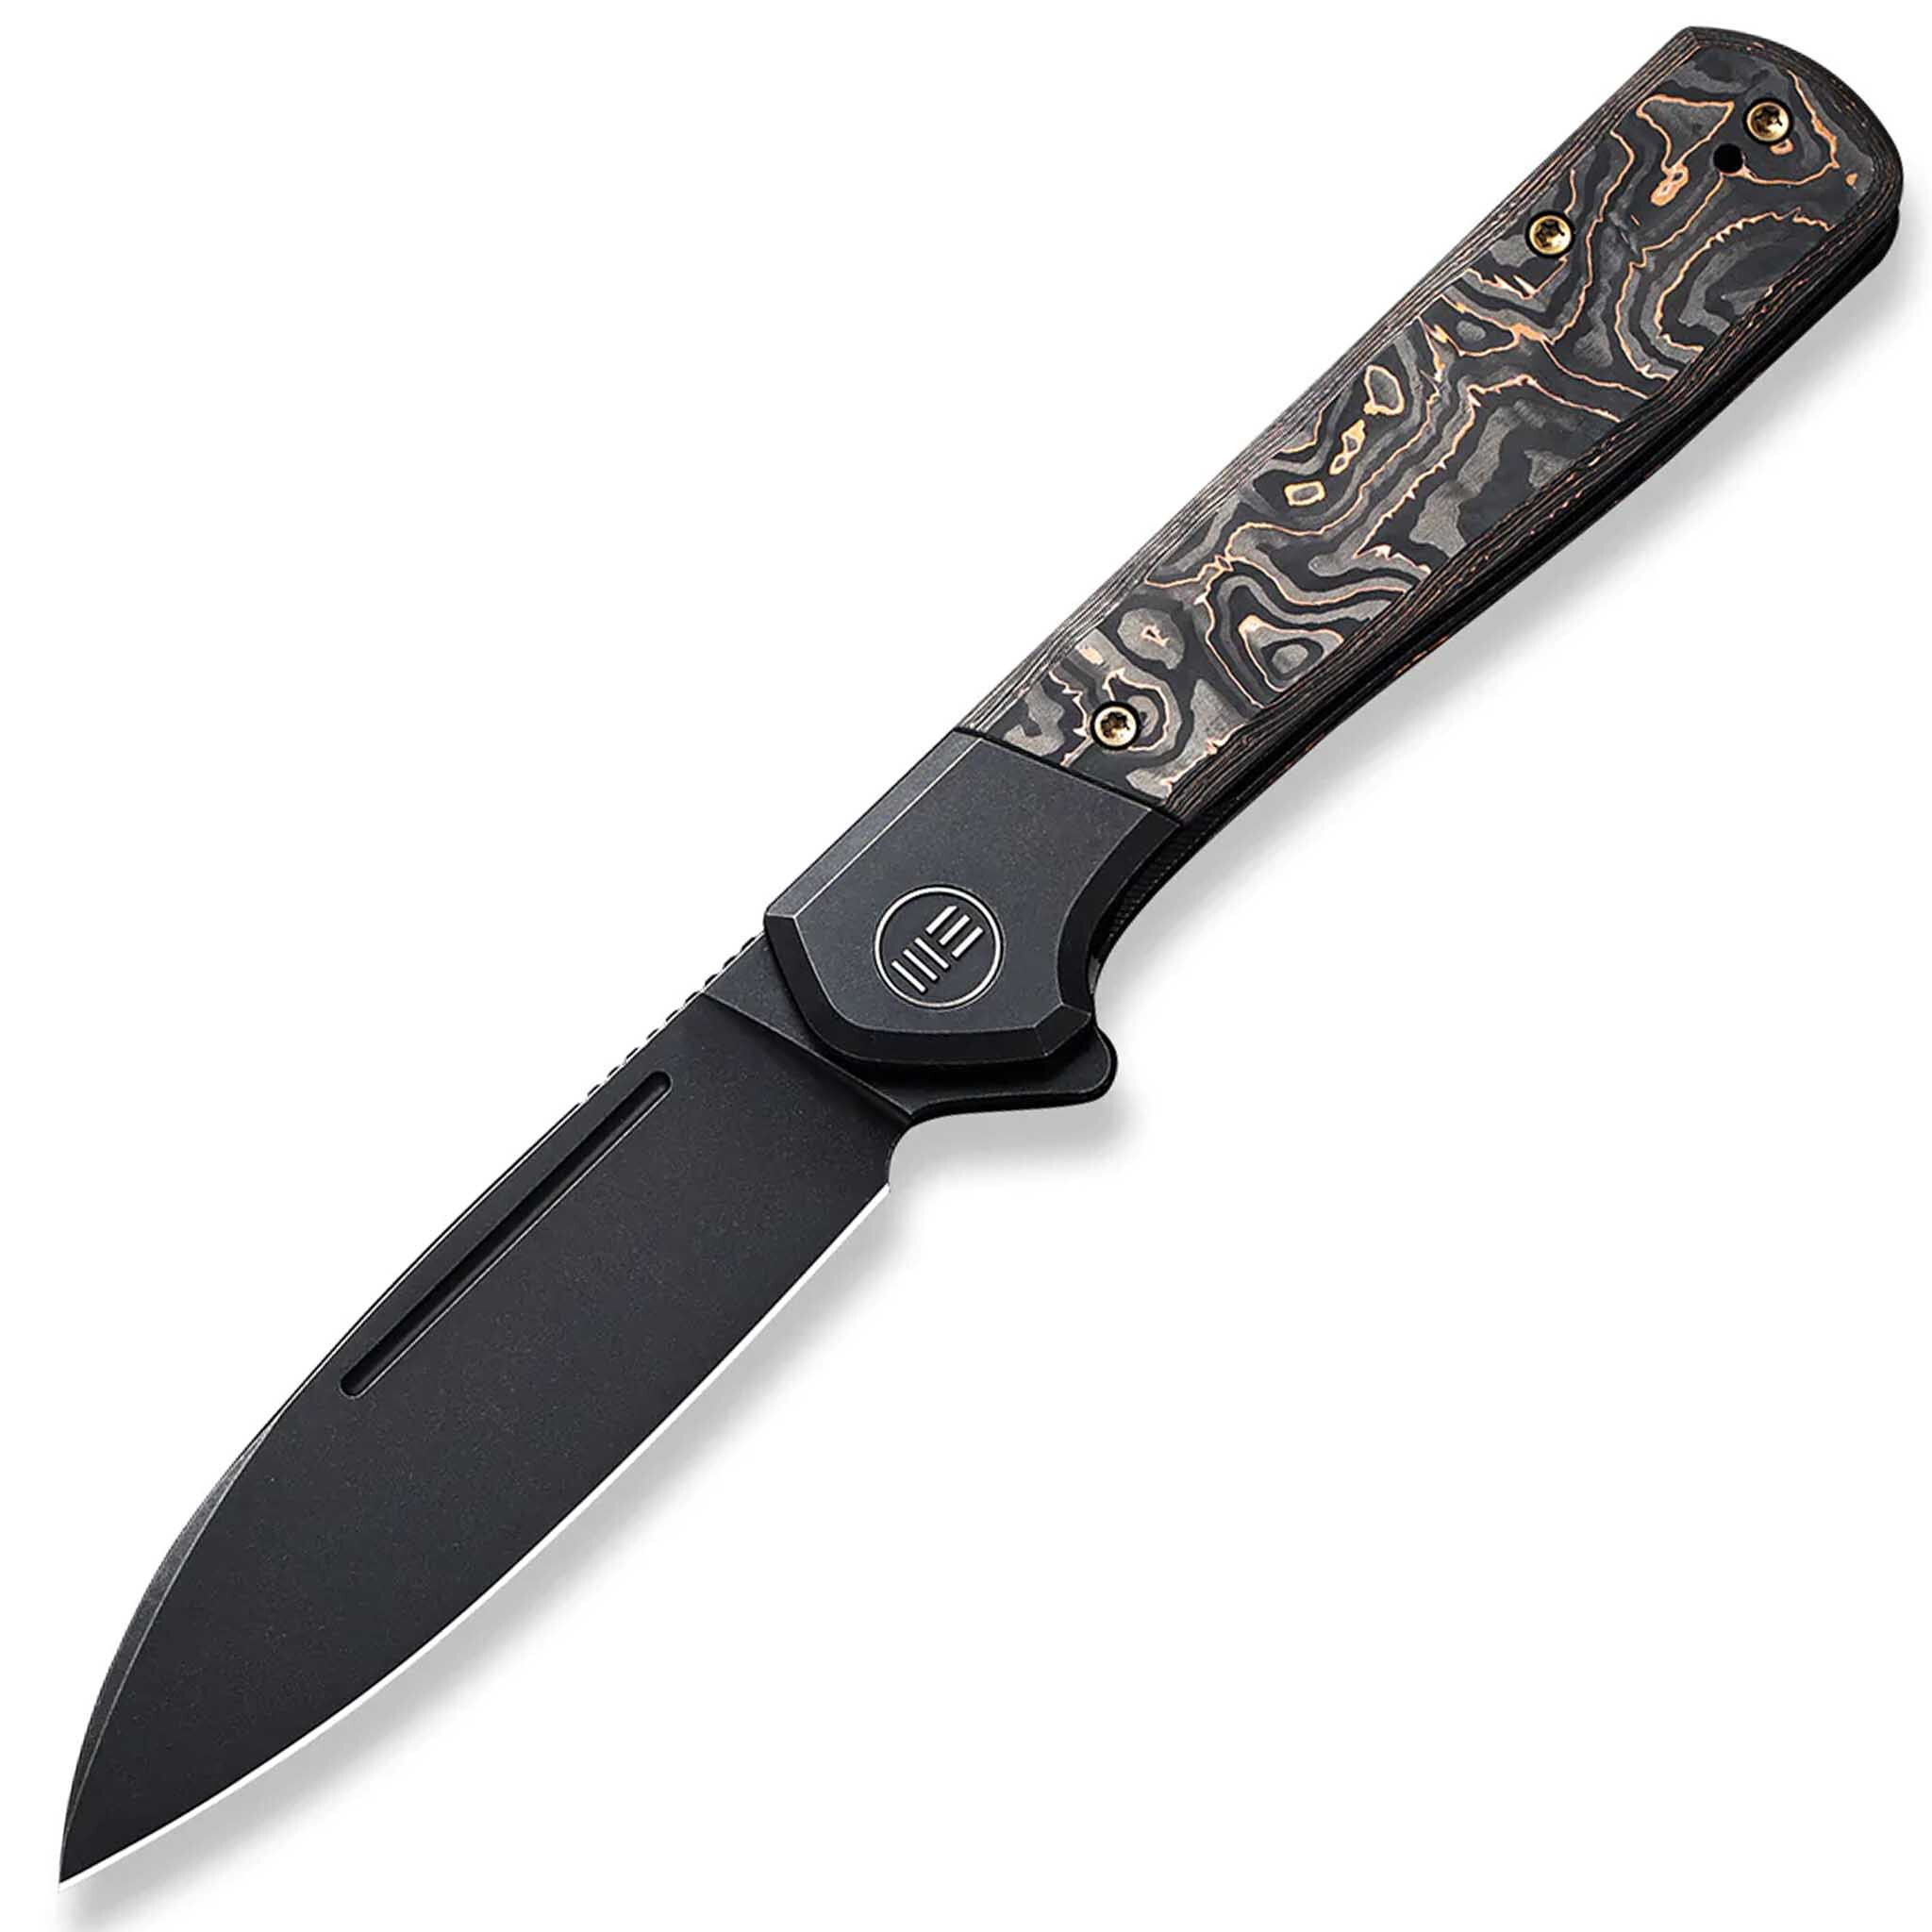 Складной нож We Knife Soothsayer Black, сталь CPM-20CV, рукоять карбон/титан складной нож zero tolerance 0990 сталь cpm 20cv рукоять carbon fiber